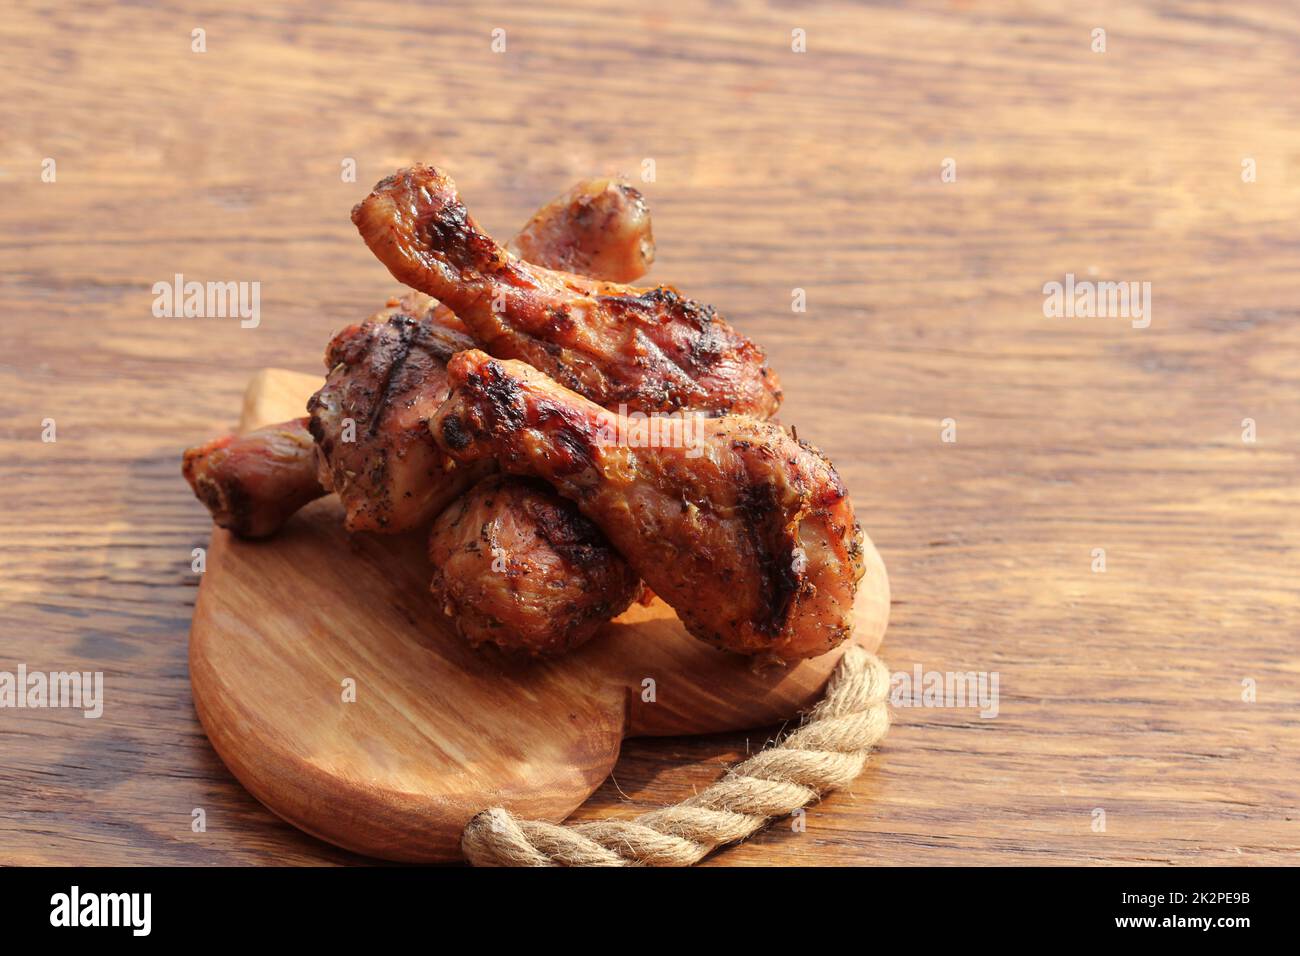 Cosce di pollo alla griglia sul tagliere. Cena rustica sfondo Foto Stock